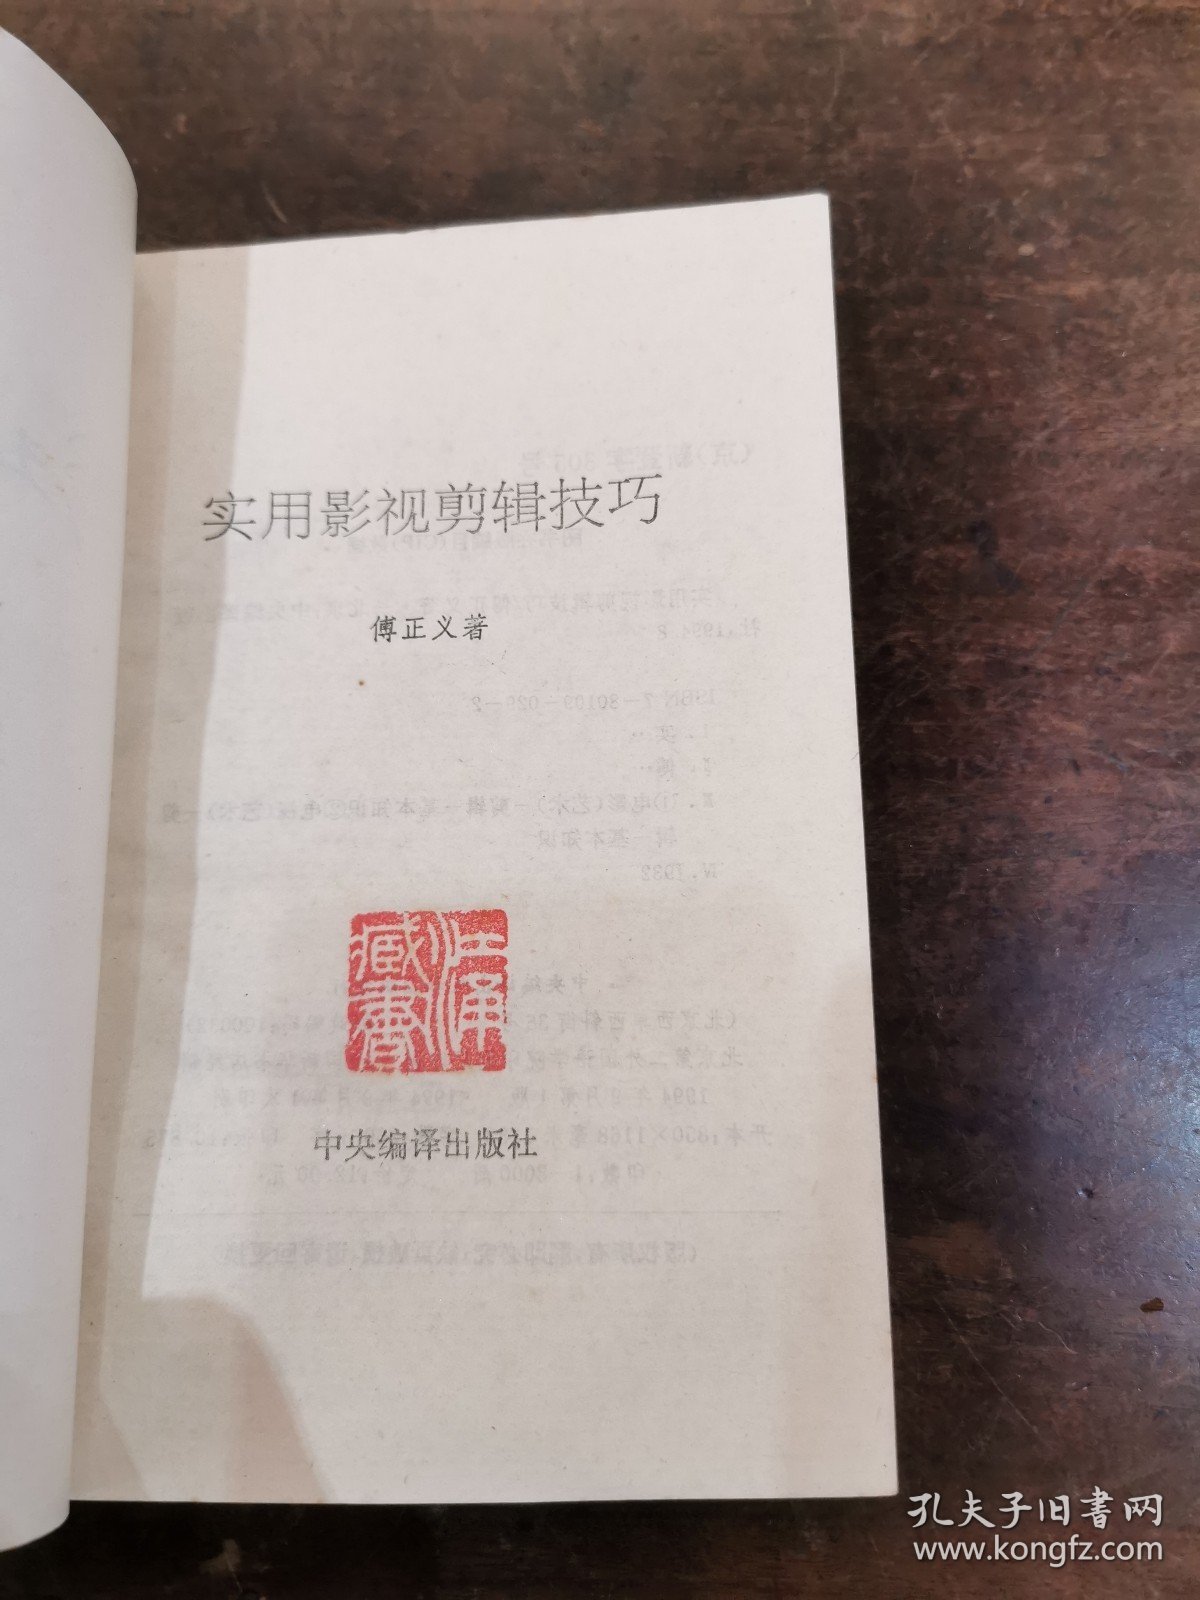 著名电影艺术家 中国第一影视剪辑师 傅正义 签名本《影视剪辑技巧》